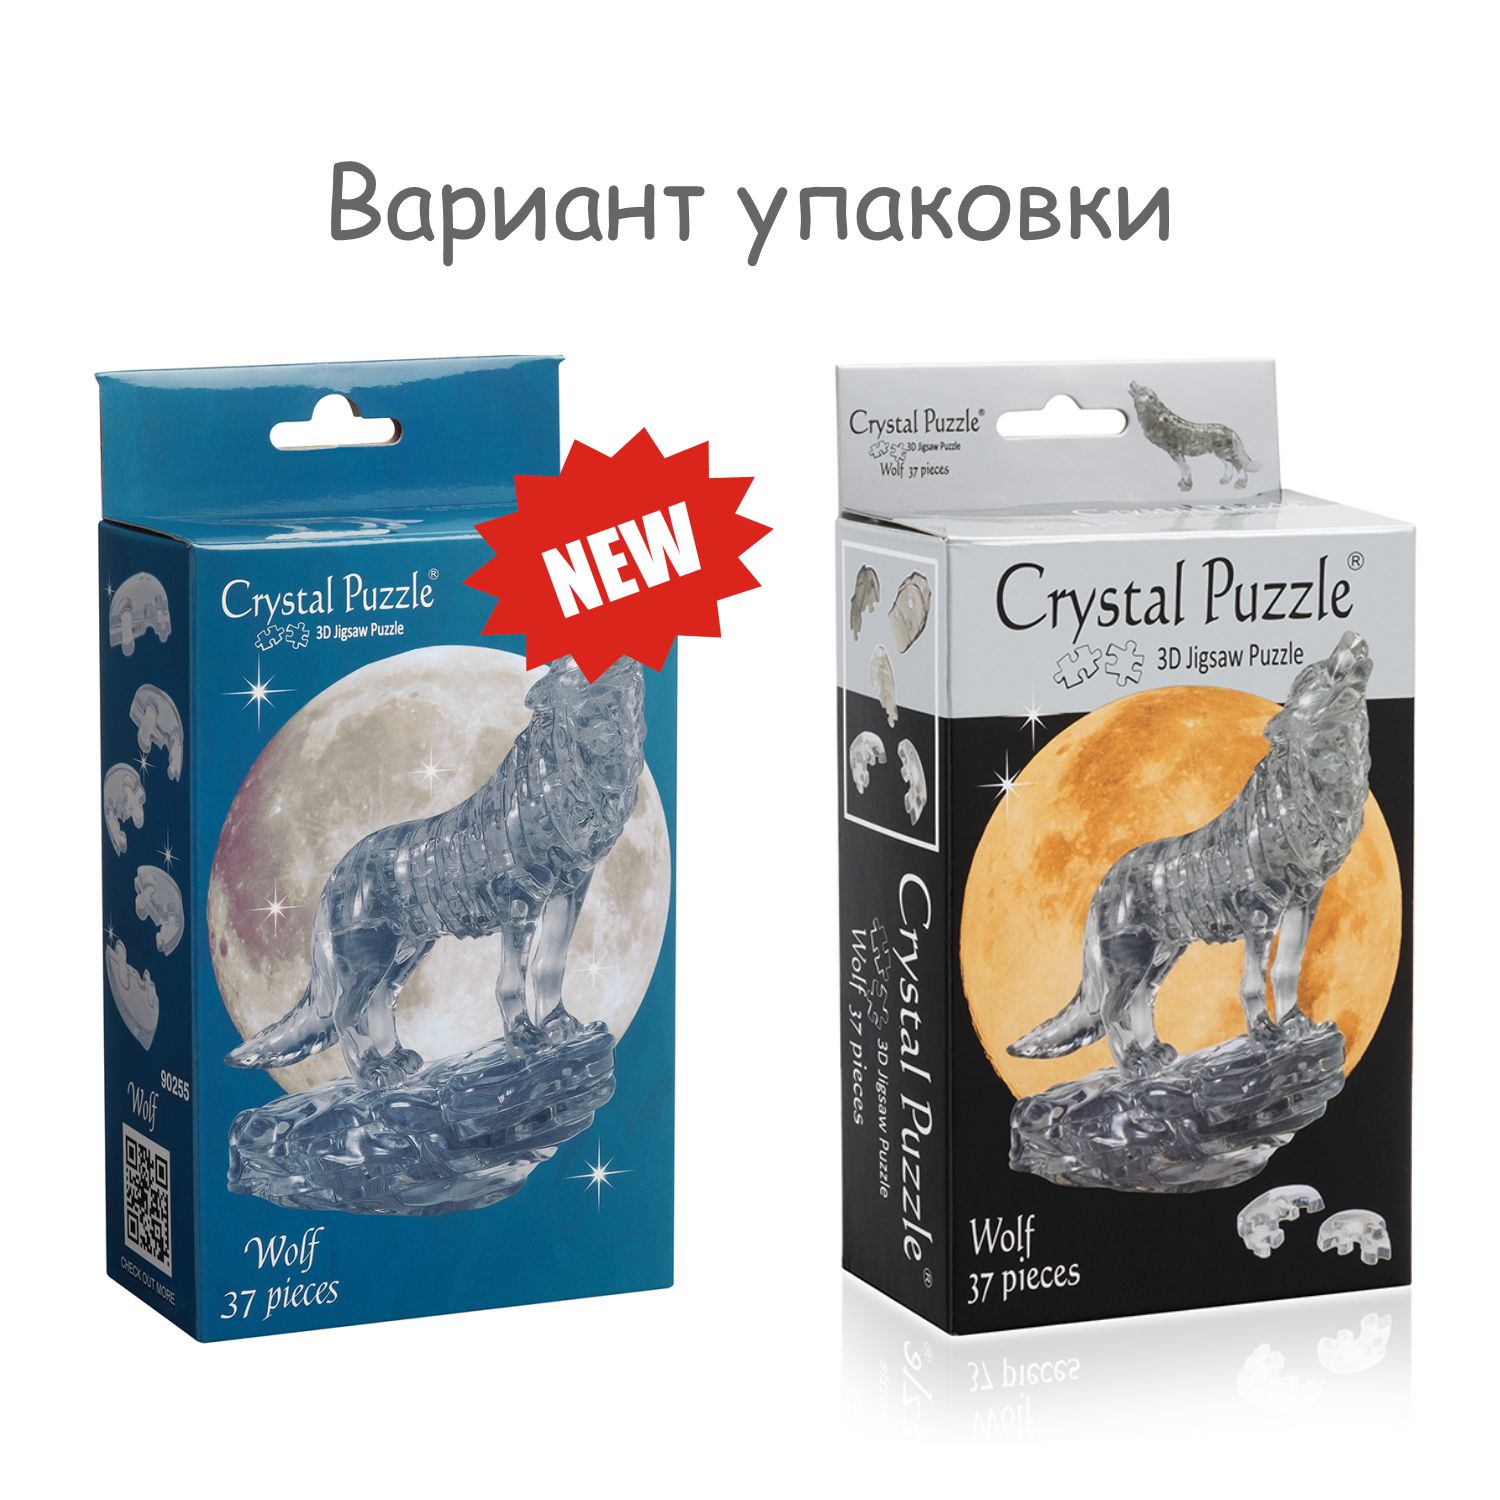 3D-пазл Crystal Puzzle IQ игра для детей кристальный Чёрный волк 37 деталей - фото 6